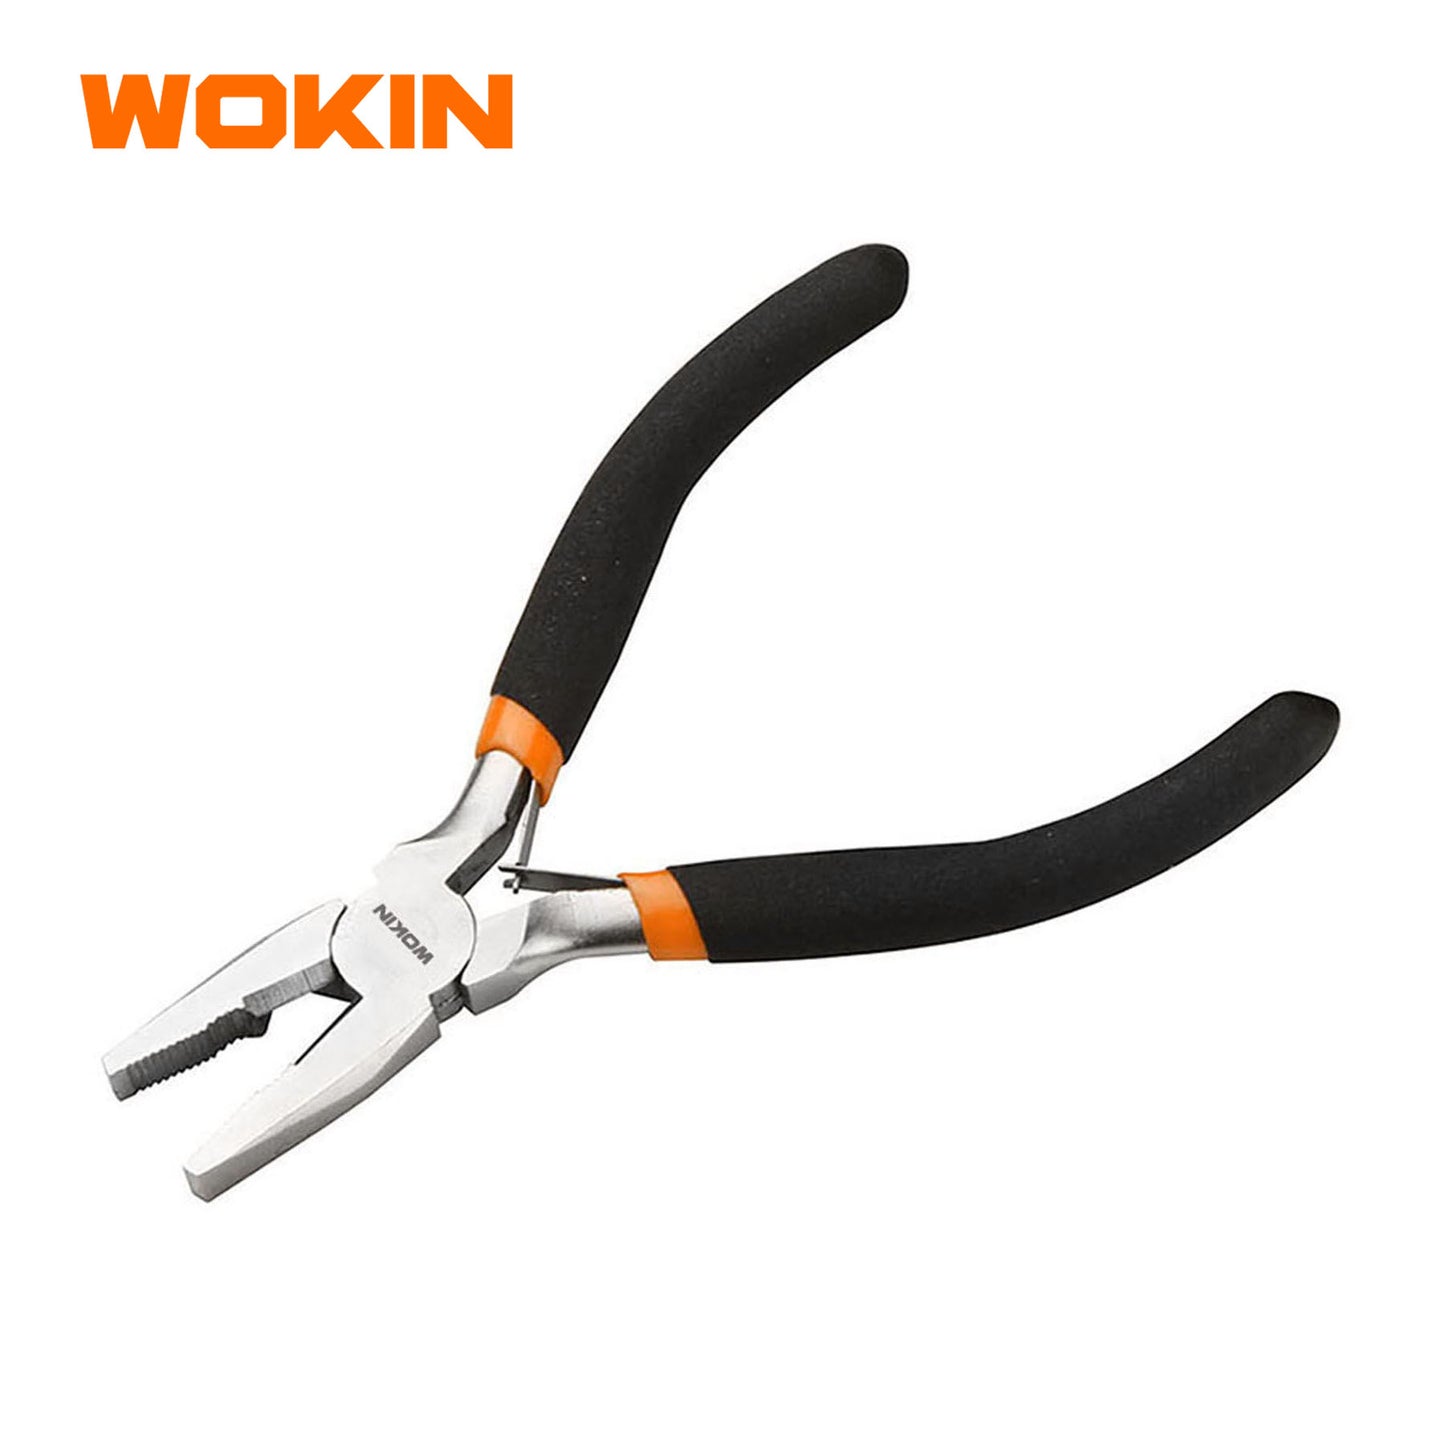 Wokin 4.5 Inch Industrial Grade Mini Combination Pliers